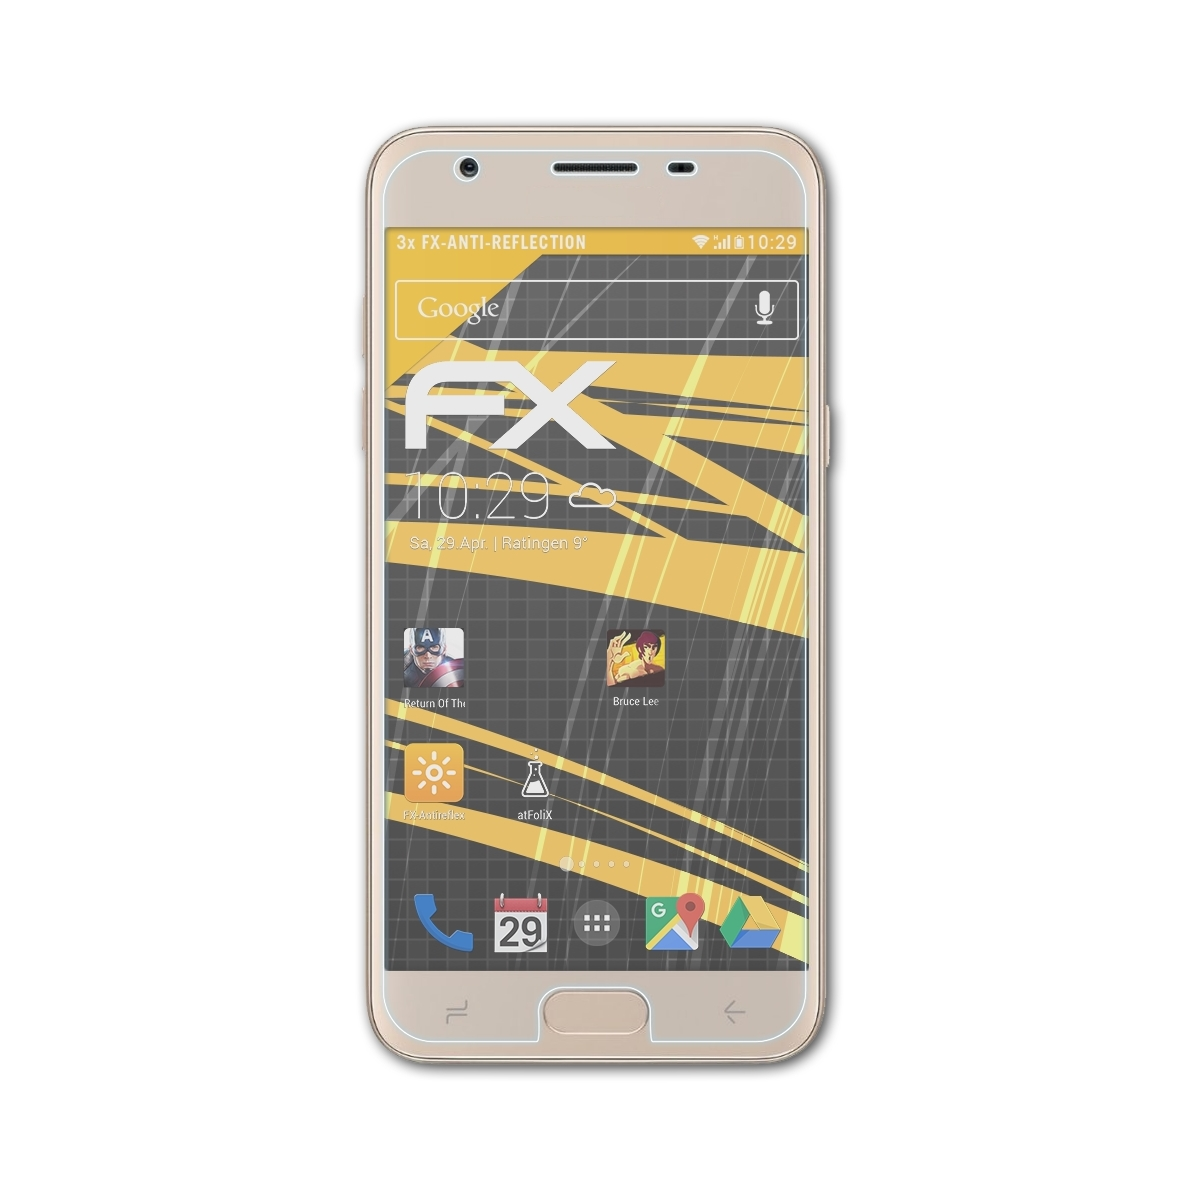 Galaxy J3 3x ATFOLIX Samsung Displayschutz(für Star) FX-Antireflex